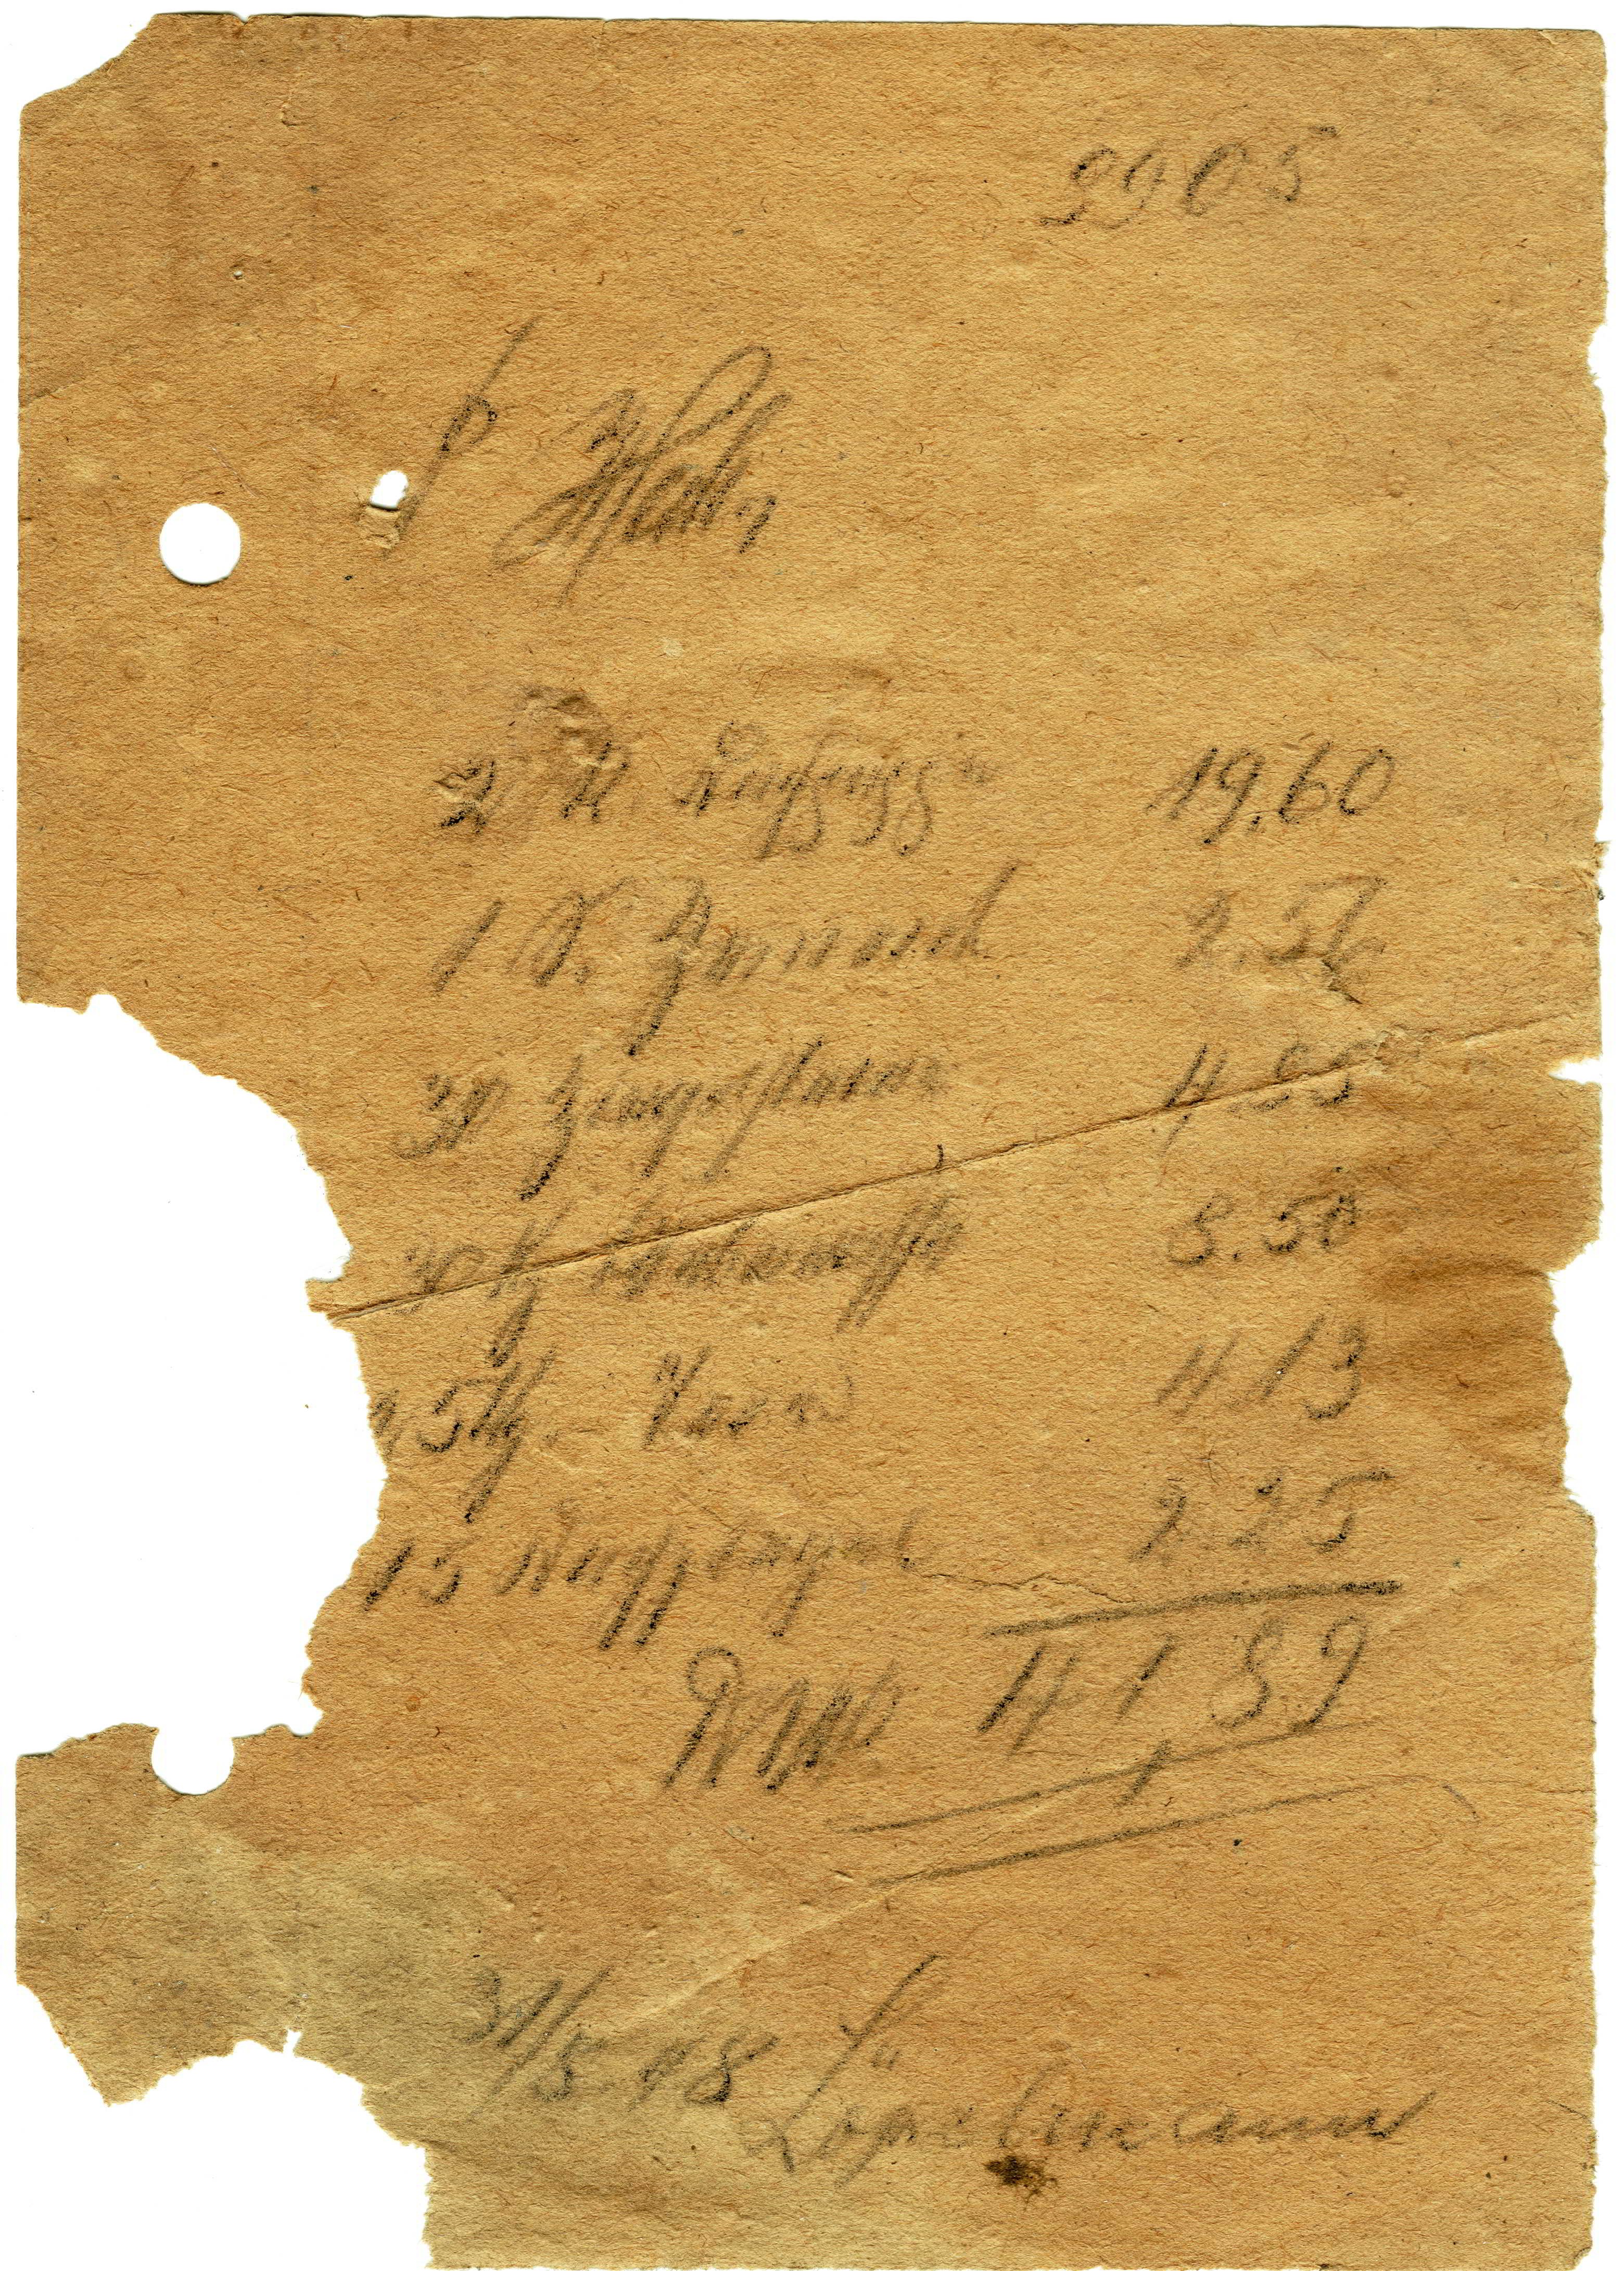 Formlose Rechnung vom 31.05.1948 auf Papier mit Bleistift geschrieben (Heimatarchiv Bad Bodendorf CC BY-NC-SA)